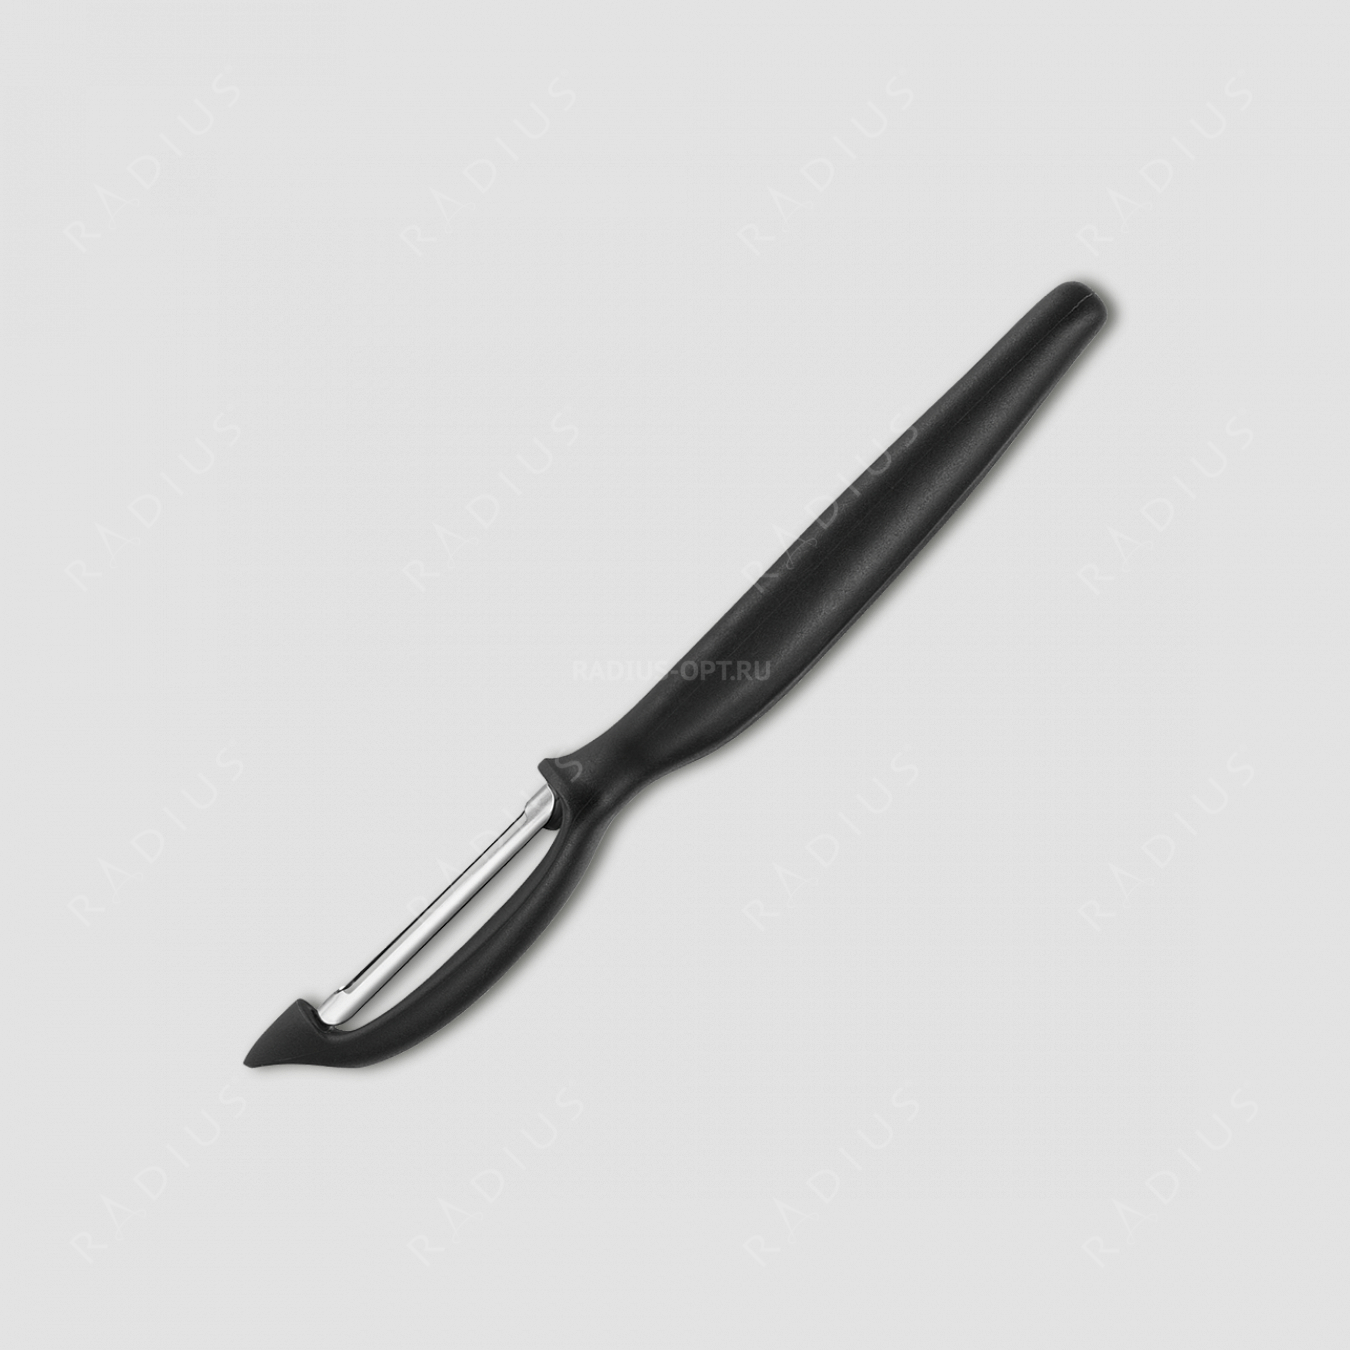 Нож кухонный для чистки овощей и фруктов, с плавающим лезвием, рукоять черная, серия Sharp Fresh Colourful, WUESTHOF, Золинген, Германия